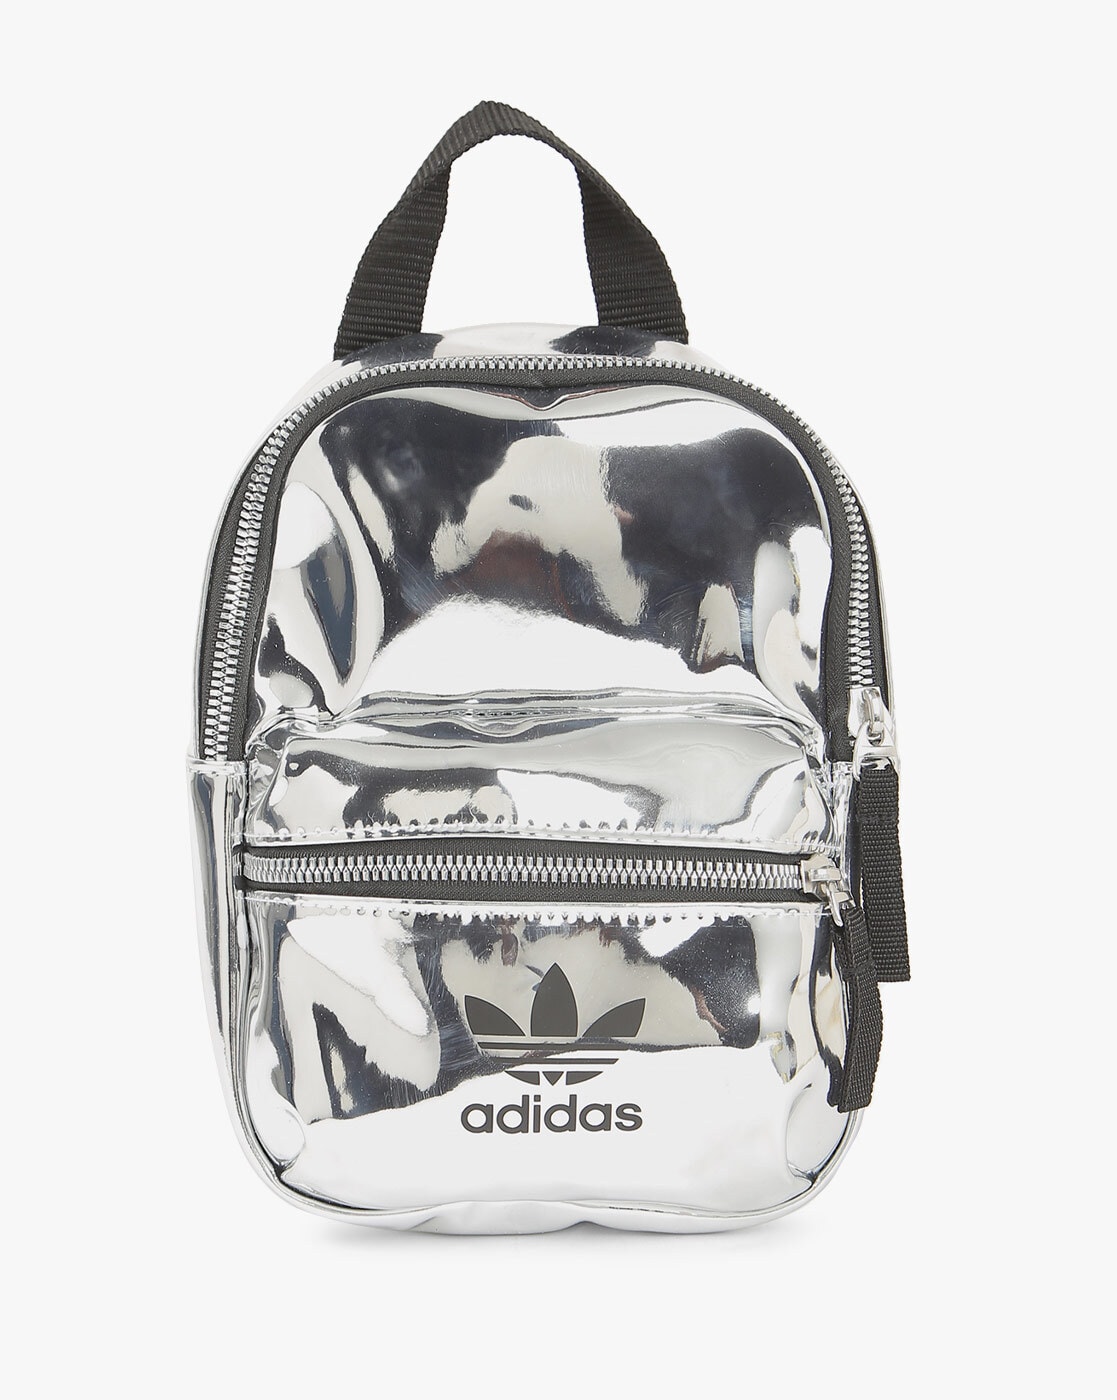 adidas backpack metallic